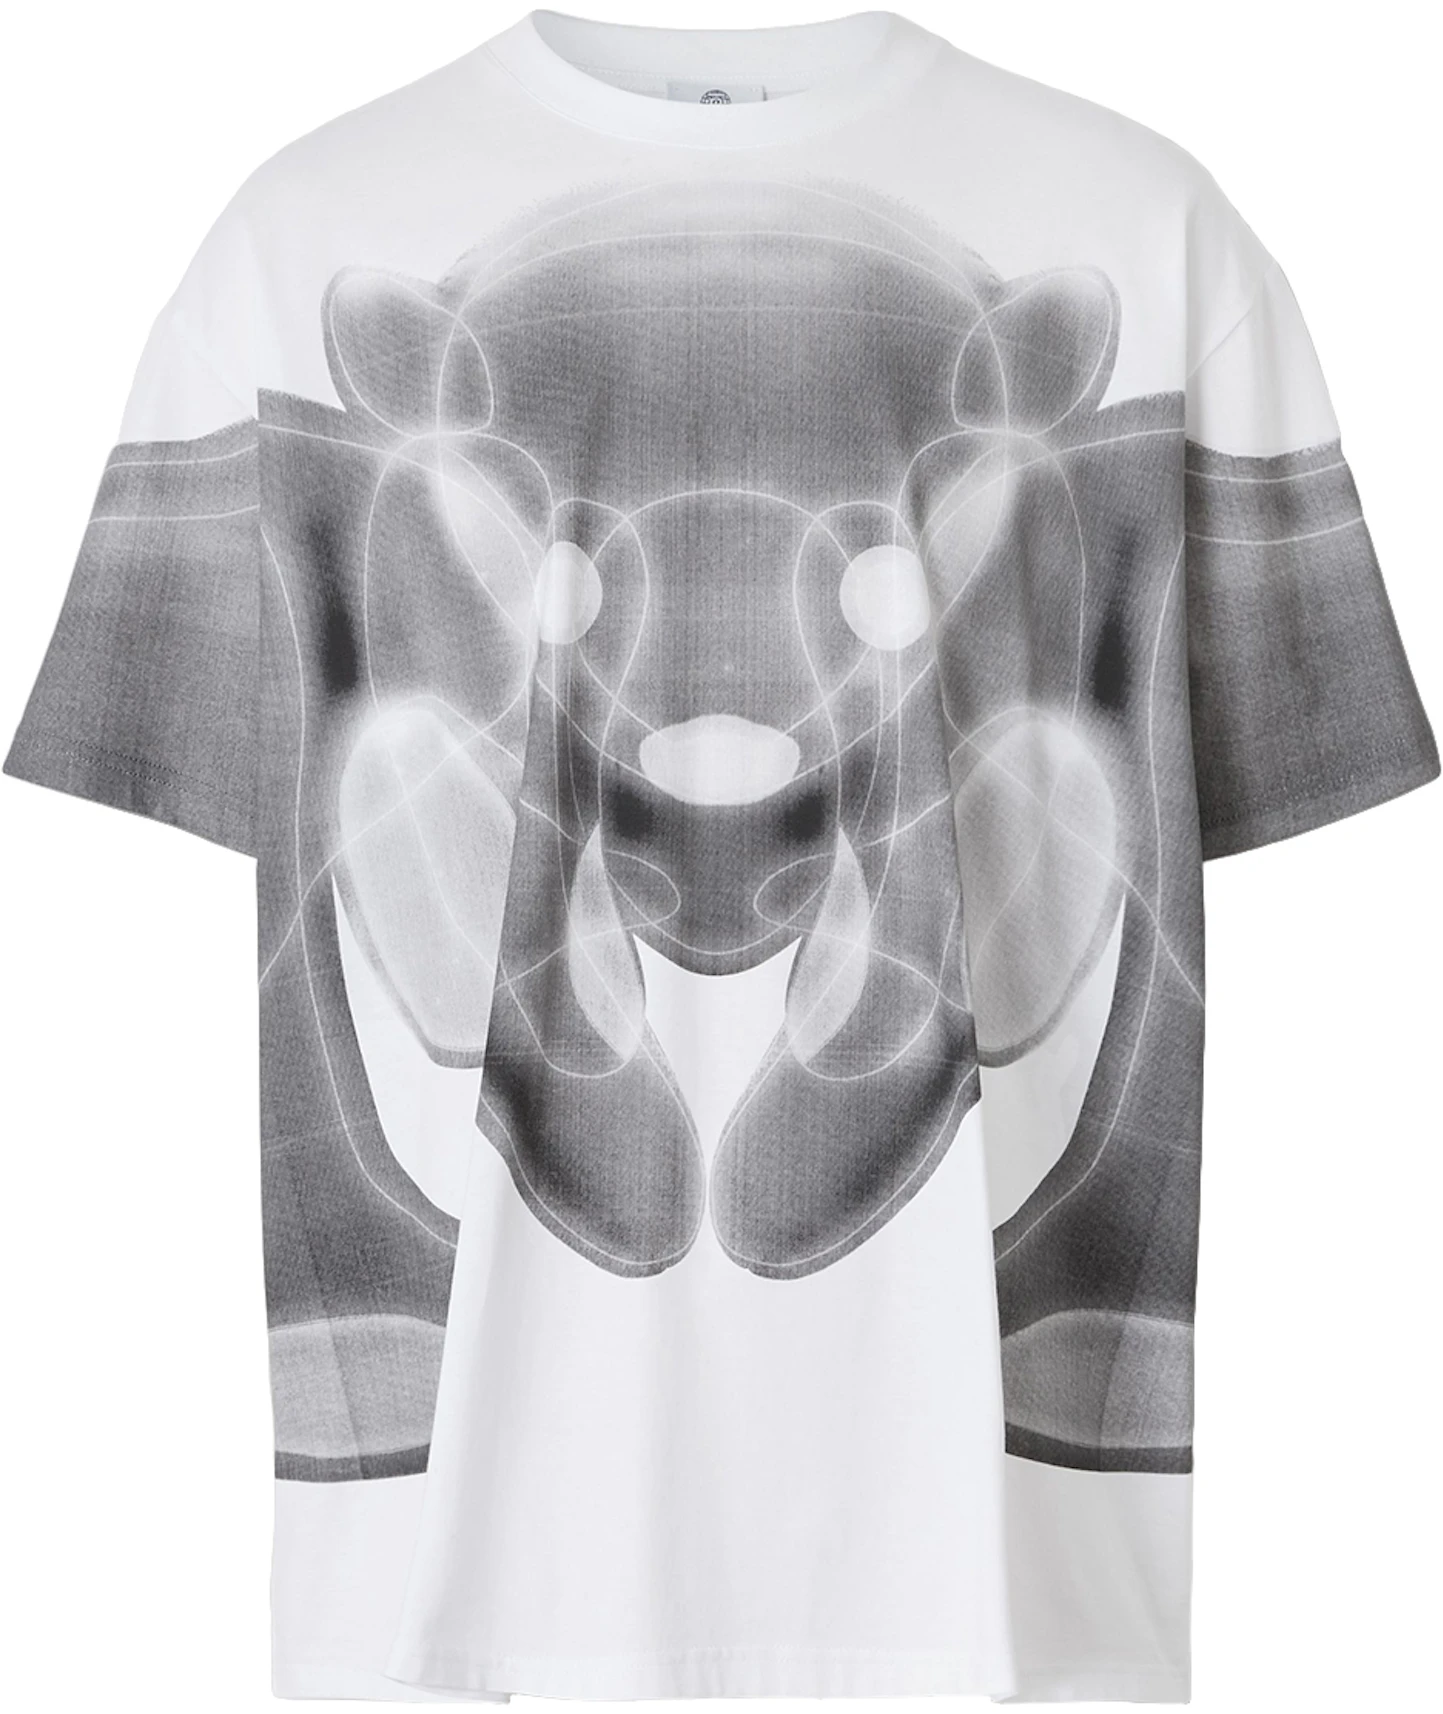 Burberry Thomas Bear Print Cotton Oversized T-shirt White/Grey - FW21 - US